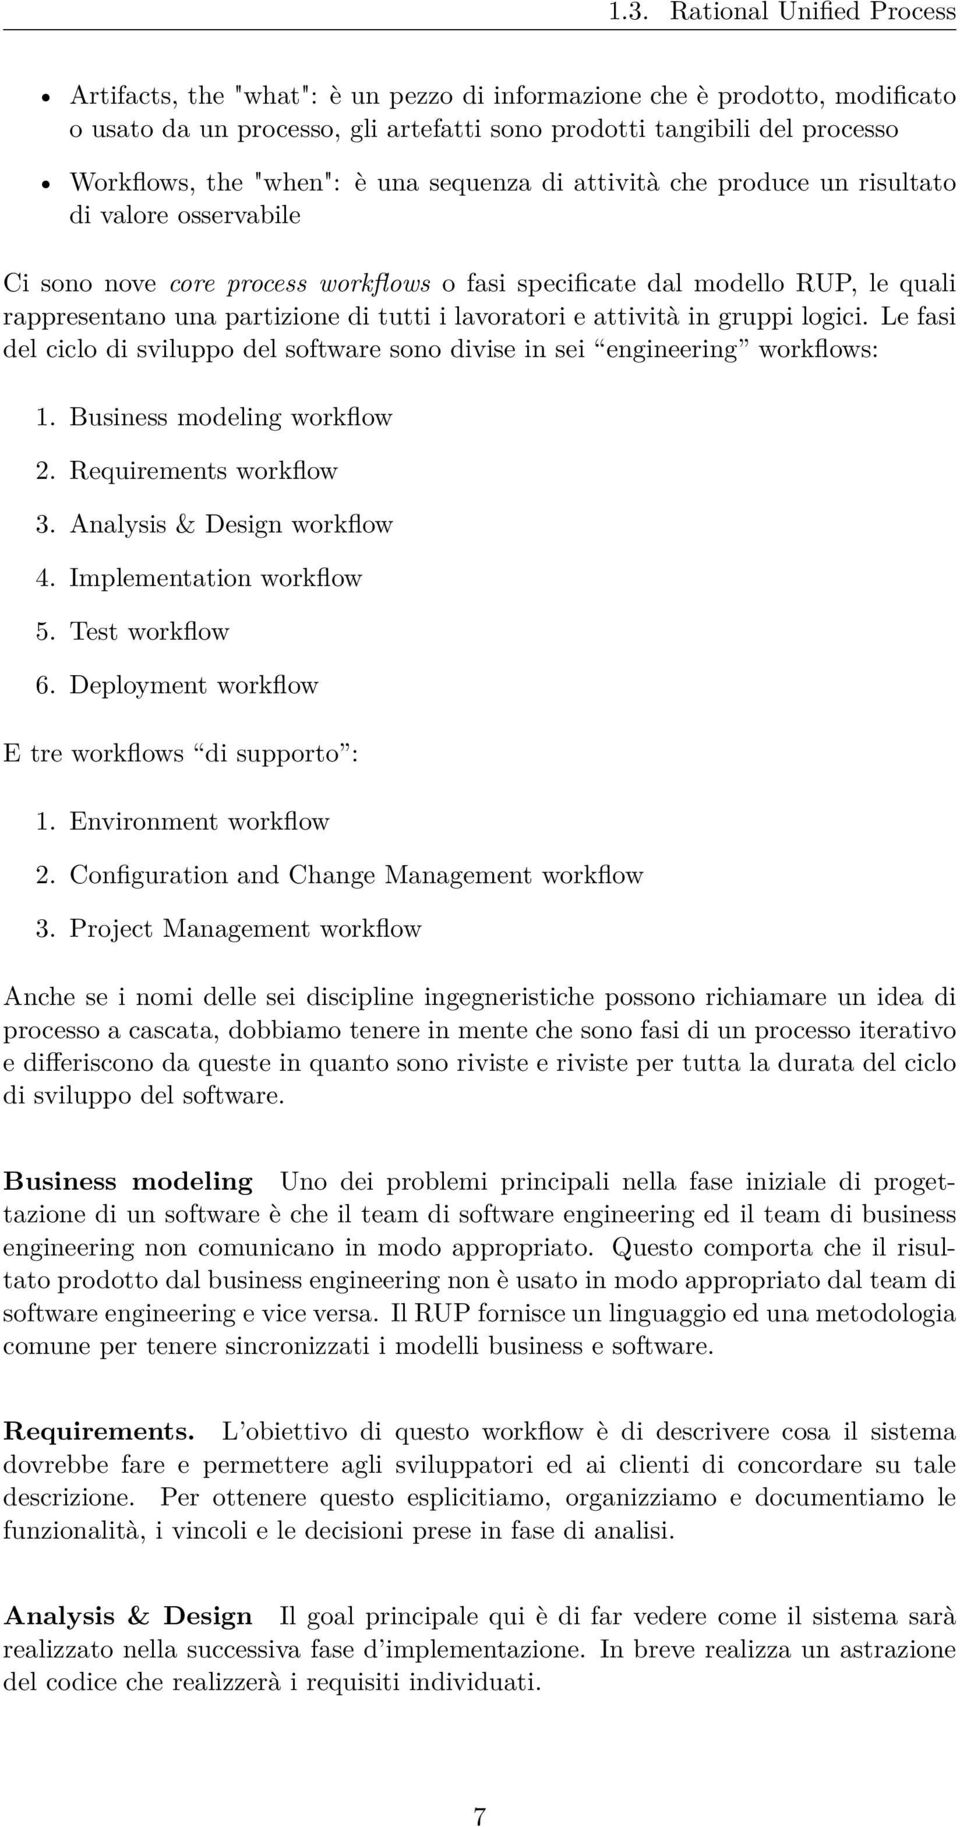 tutti i lavoratori e attività in gruppi logici. Le fasi del ciclo di sviluppo del software sono divise in sei engineering workflows: 1. Business modeling workflow 2. Requirements workflow 3.